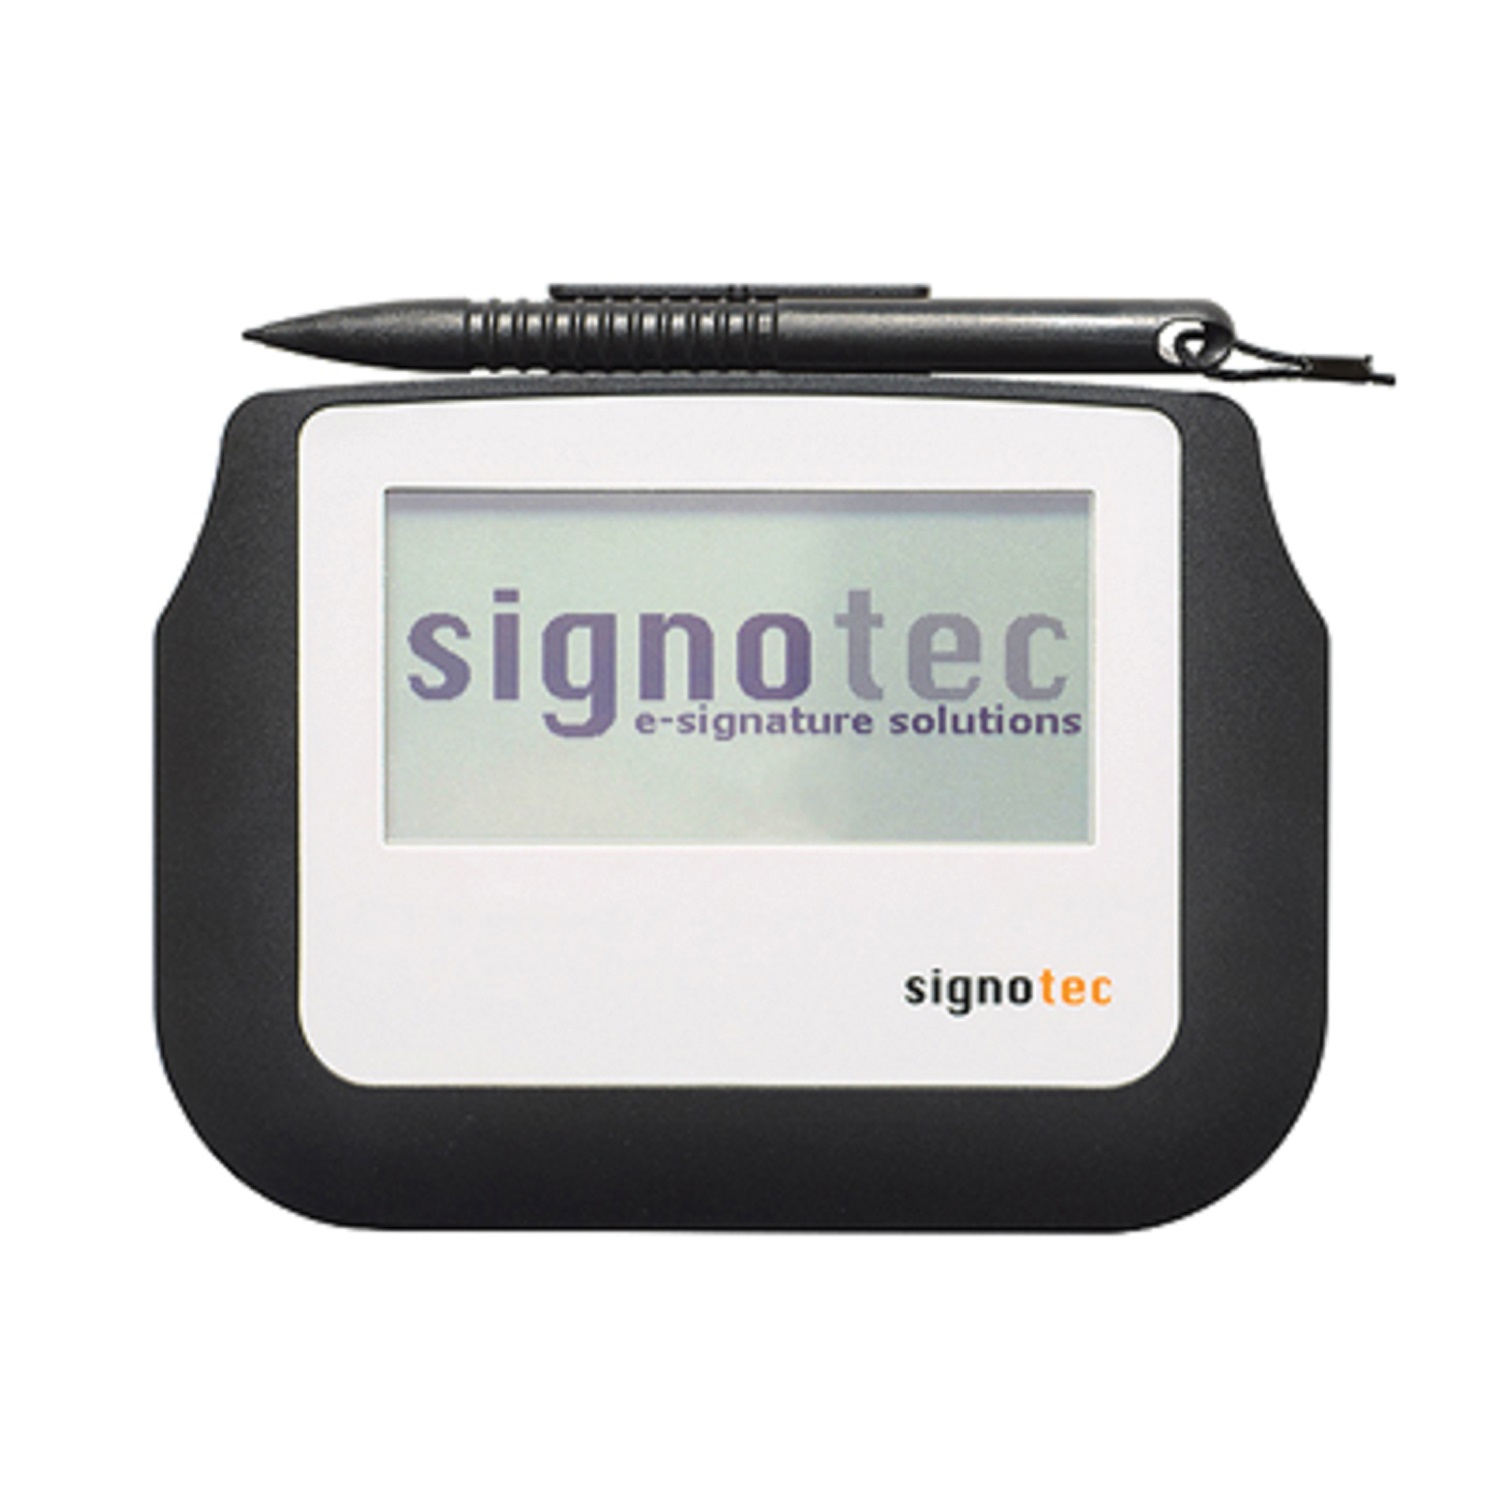 پد امضای دیجیتال سیگنوتک مدل Sigma 105